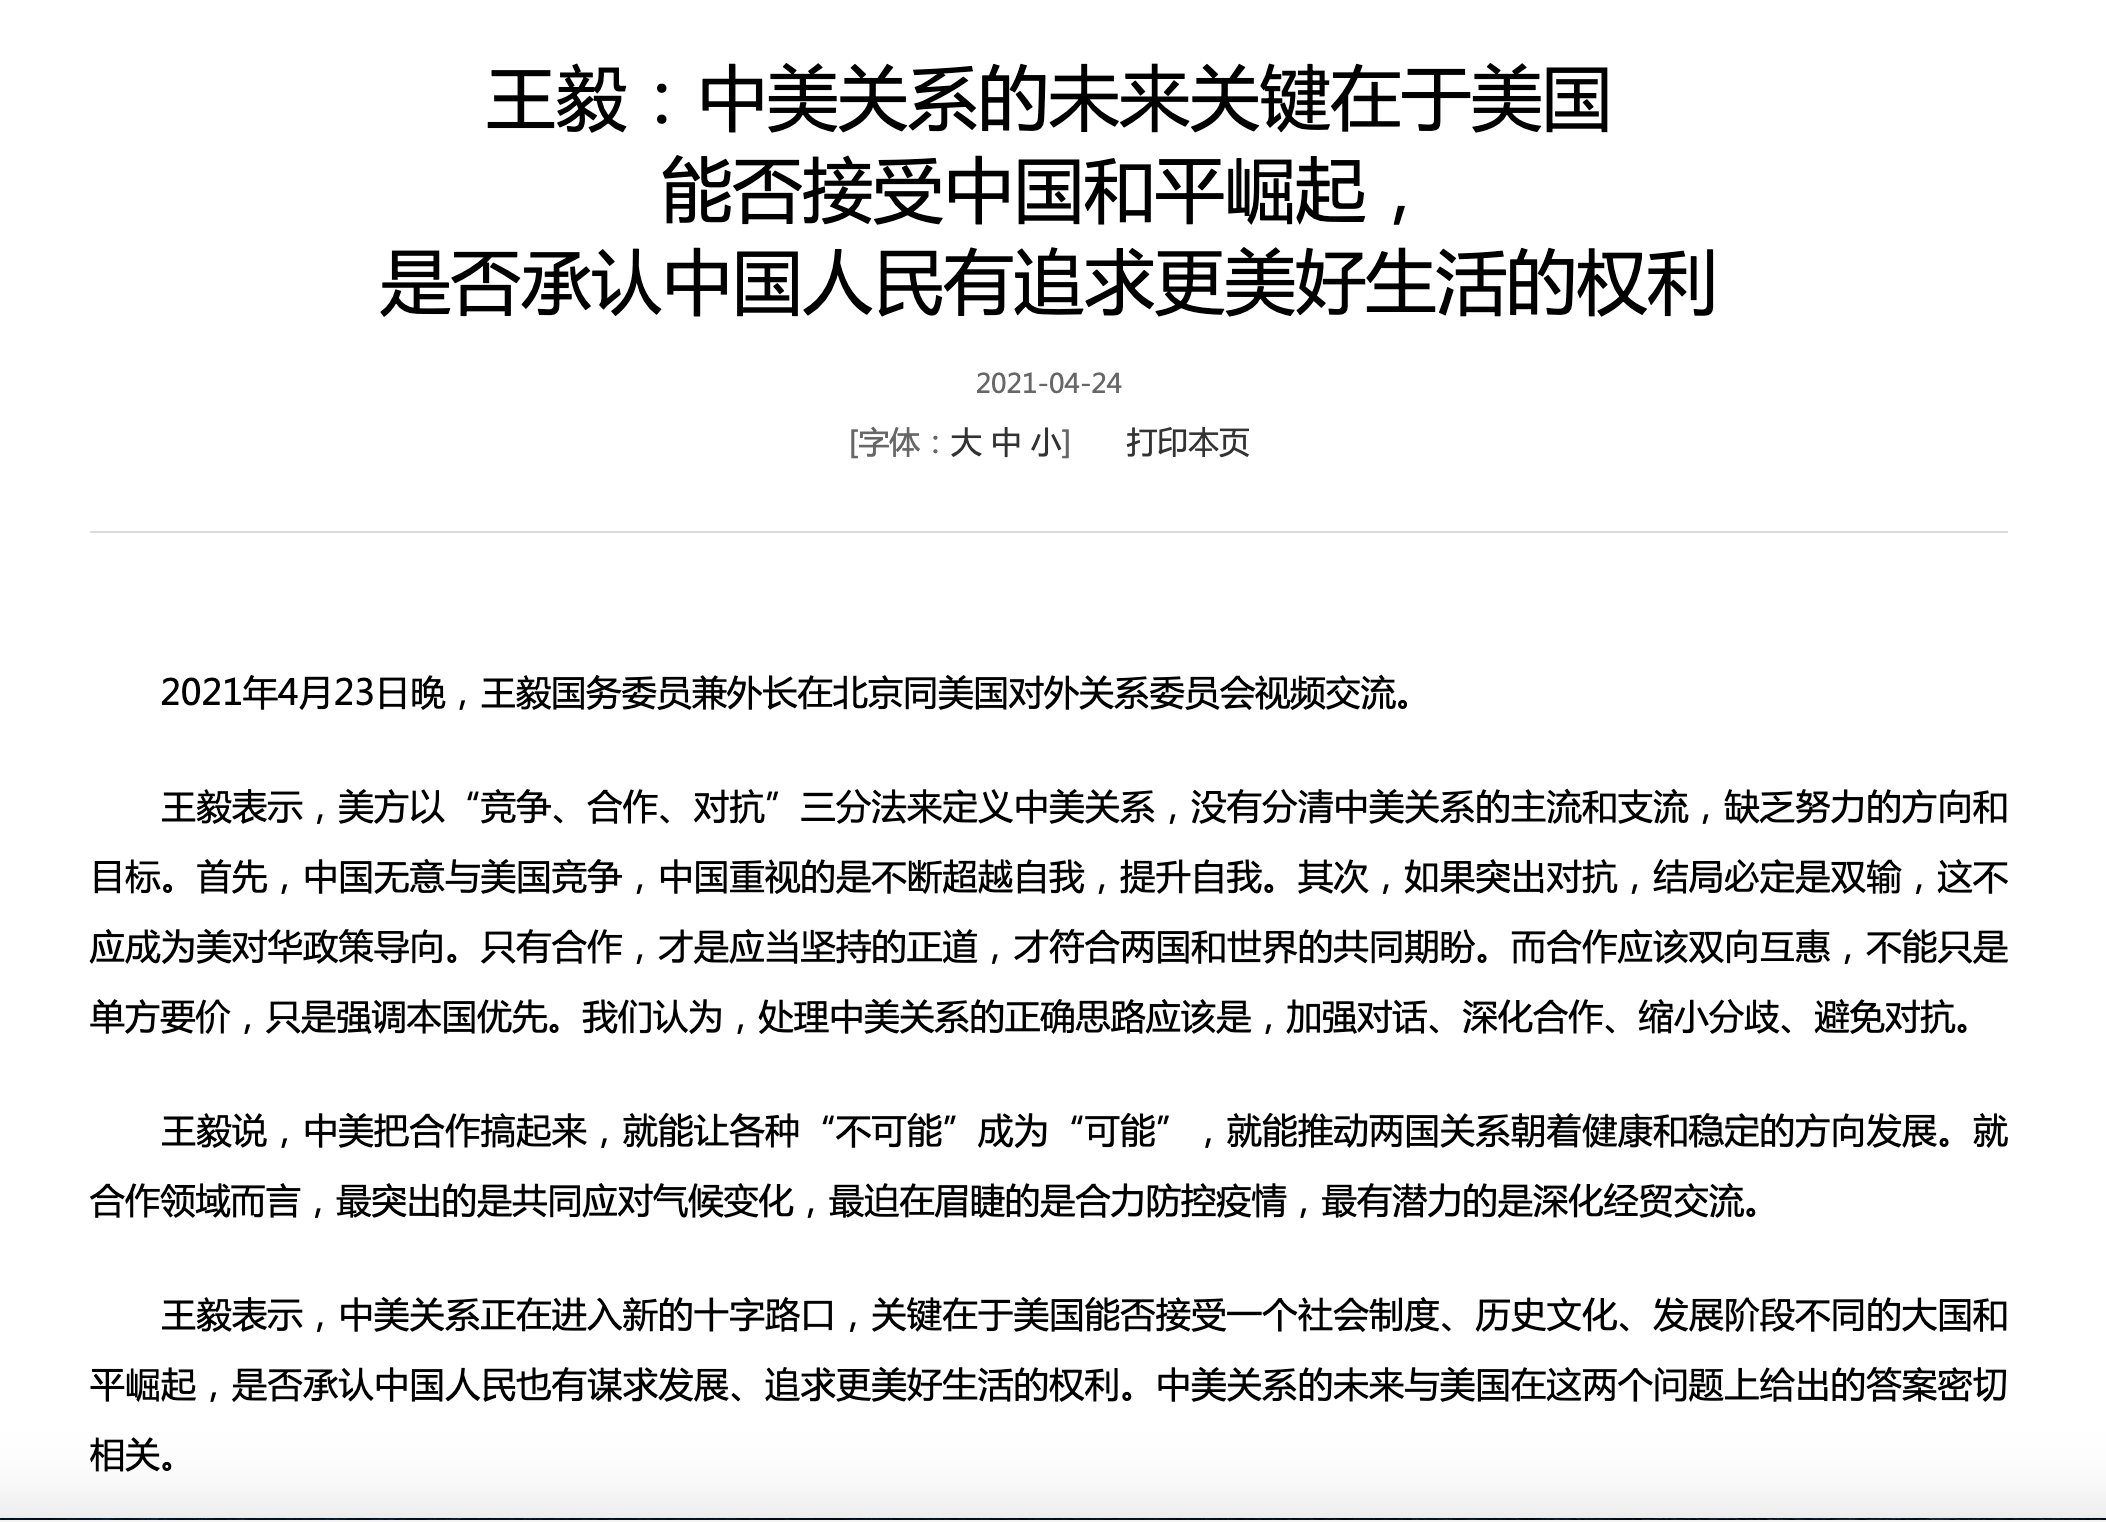 王毅:中美关系的未来关键在于美国能否接受中国和平崛起,是否承认中国